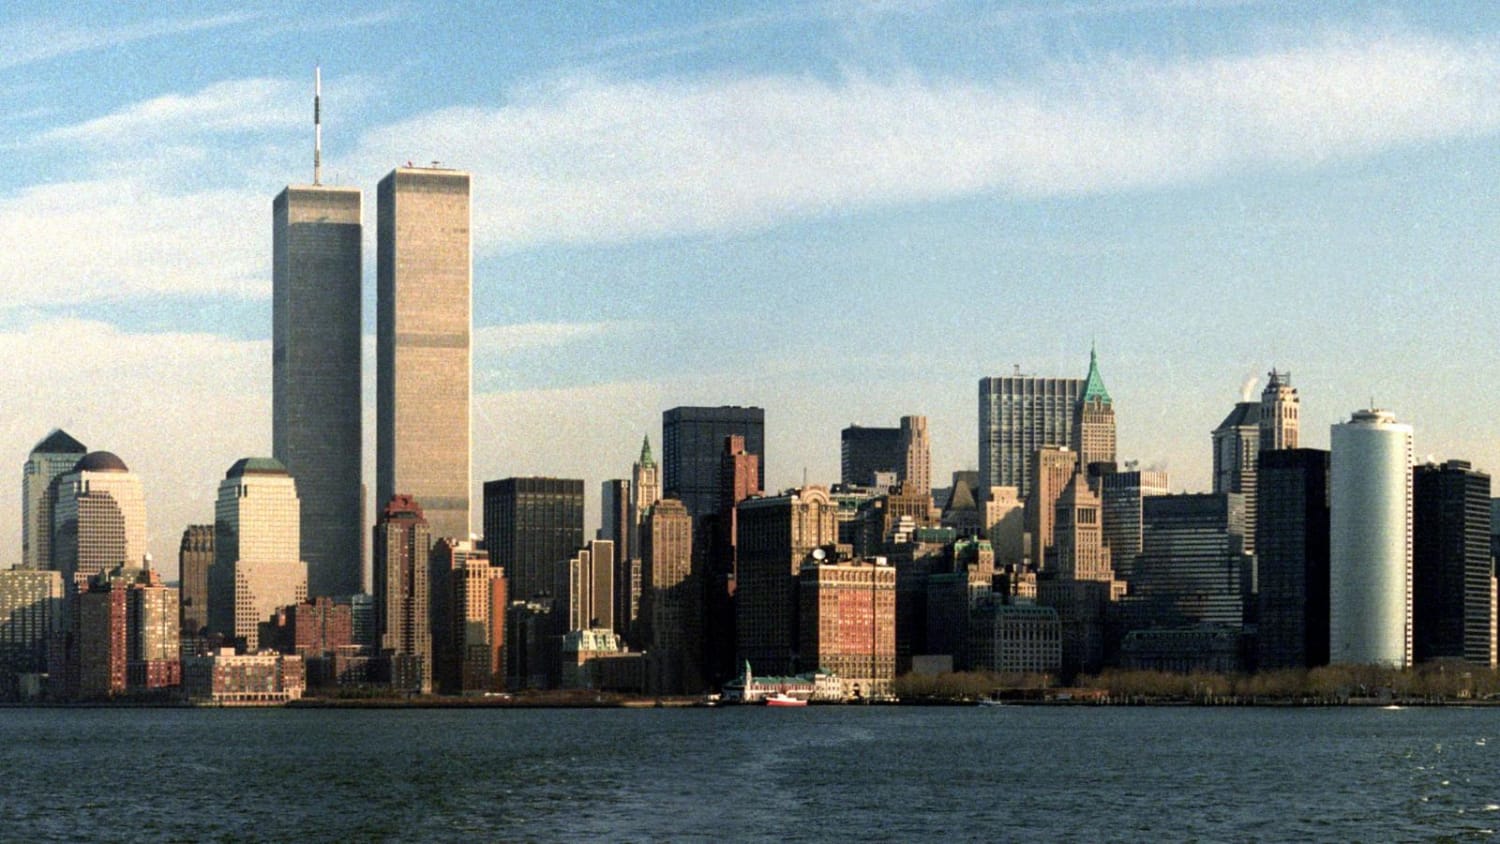 New York before 2001 (September)